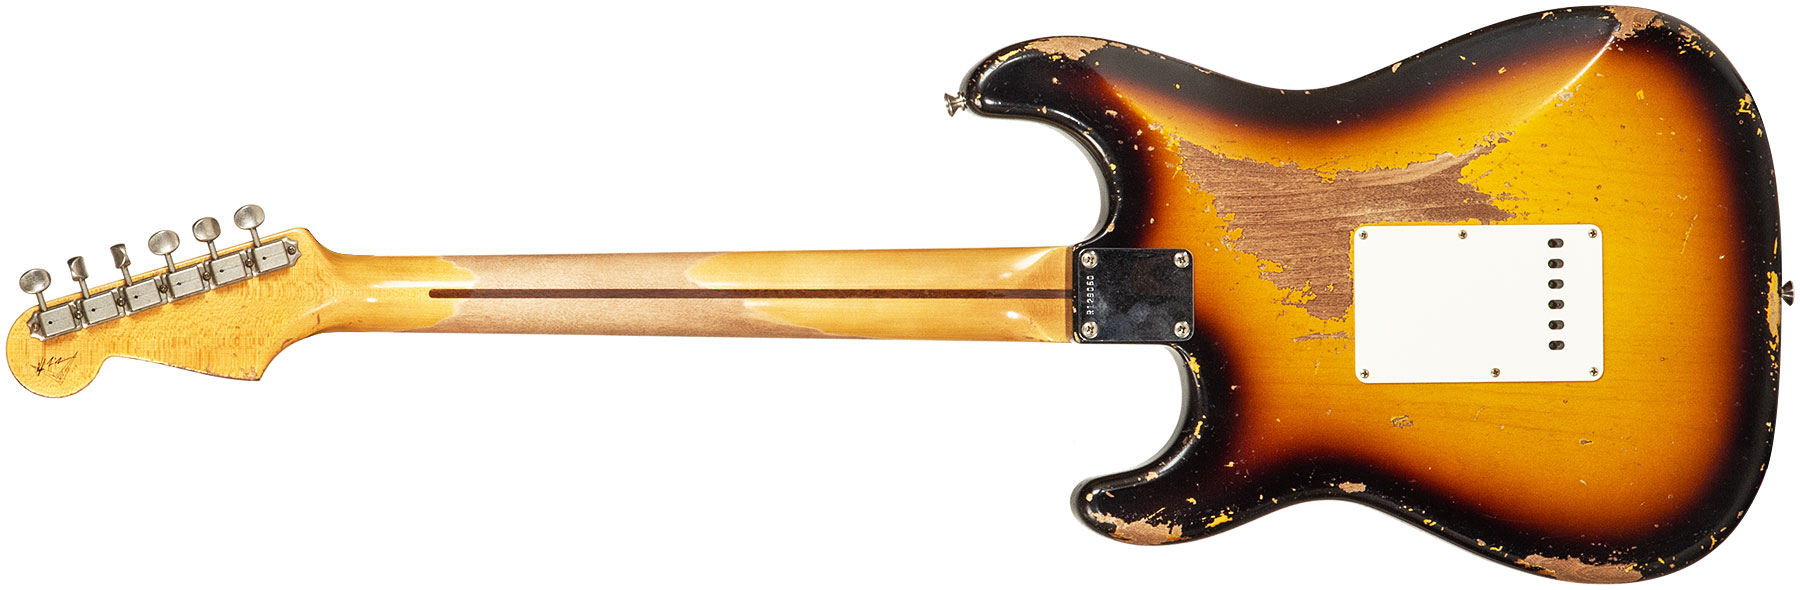 Fender Custom Shop Strat 1956 Masterbuilt K.mcmillin 3s Trem Mn #r129060 - Heavy Relic 2-color Sunburst - Elektrische gitaar in Str-vorm - Variation 1